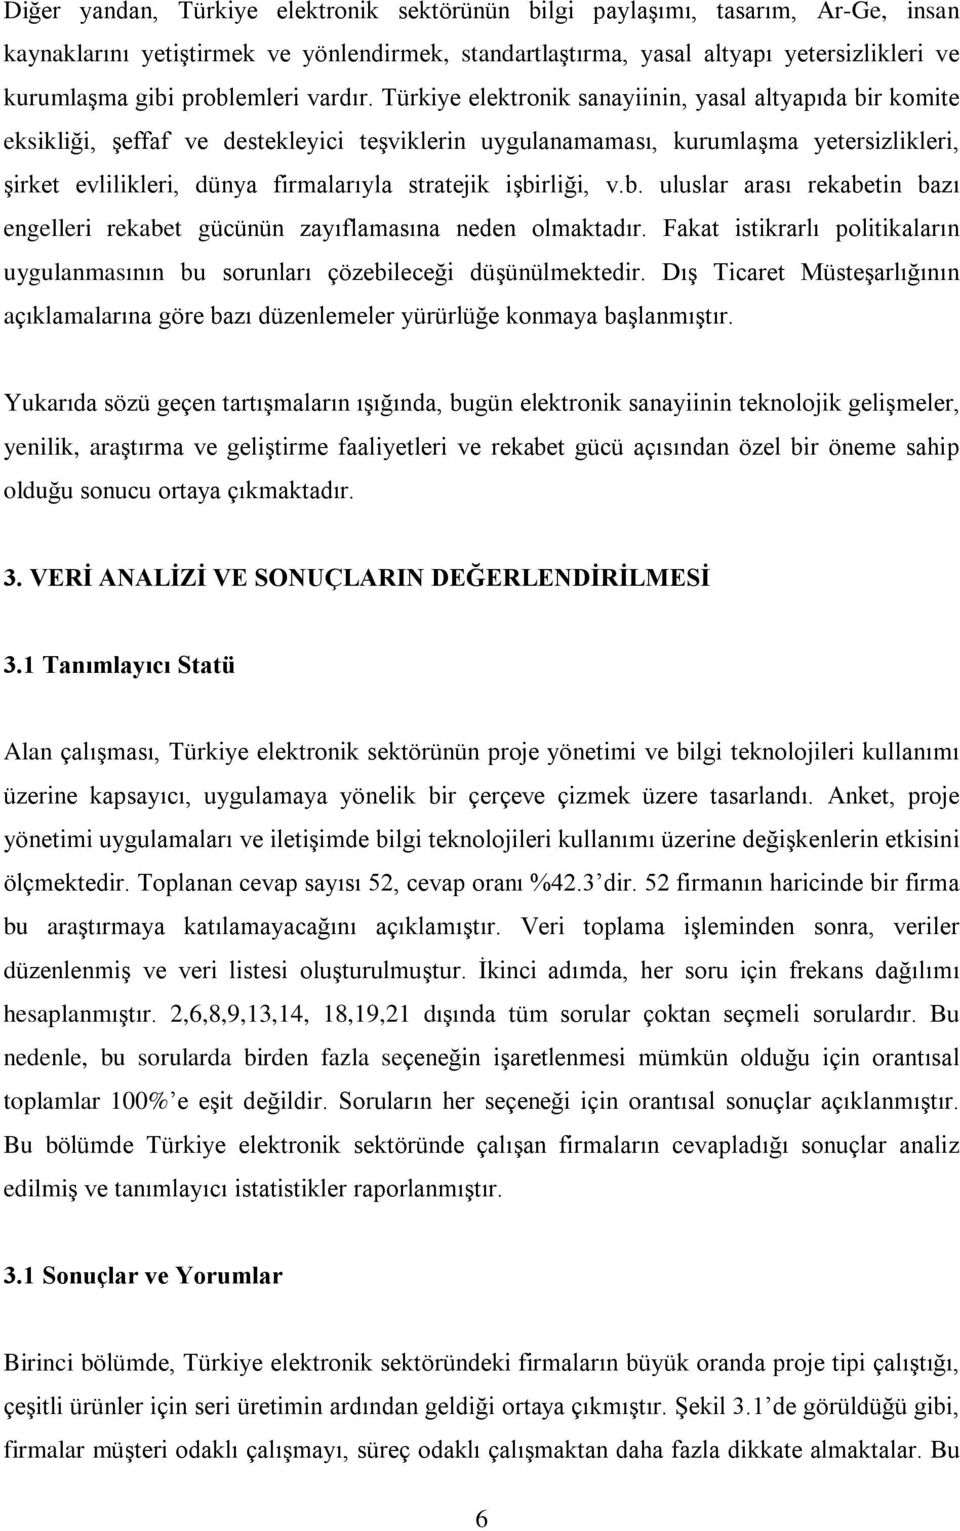 Türkiye elektronik sanayiinin, yasal altyapýda bir komite eksikliði, ºeffaf ve destekleyici teºviklerin uygulanamamasý, kurumlaºma yetersizlikleri, ºirket evlilikleri, dünya firmalarýyla stratejik